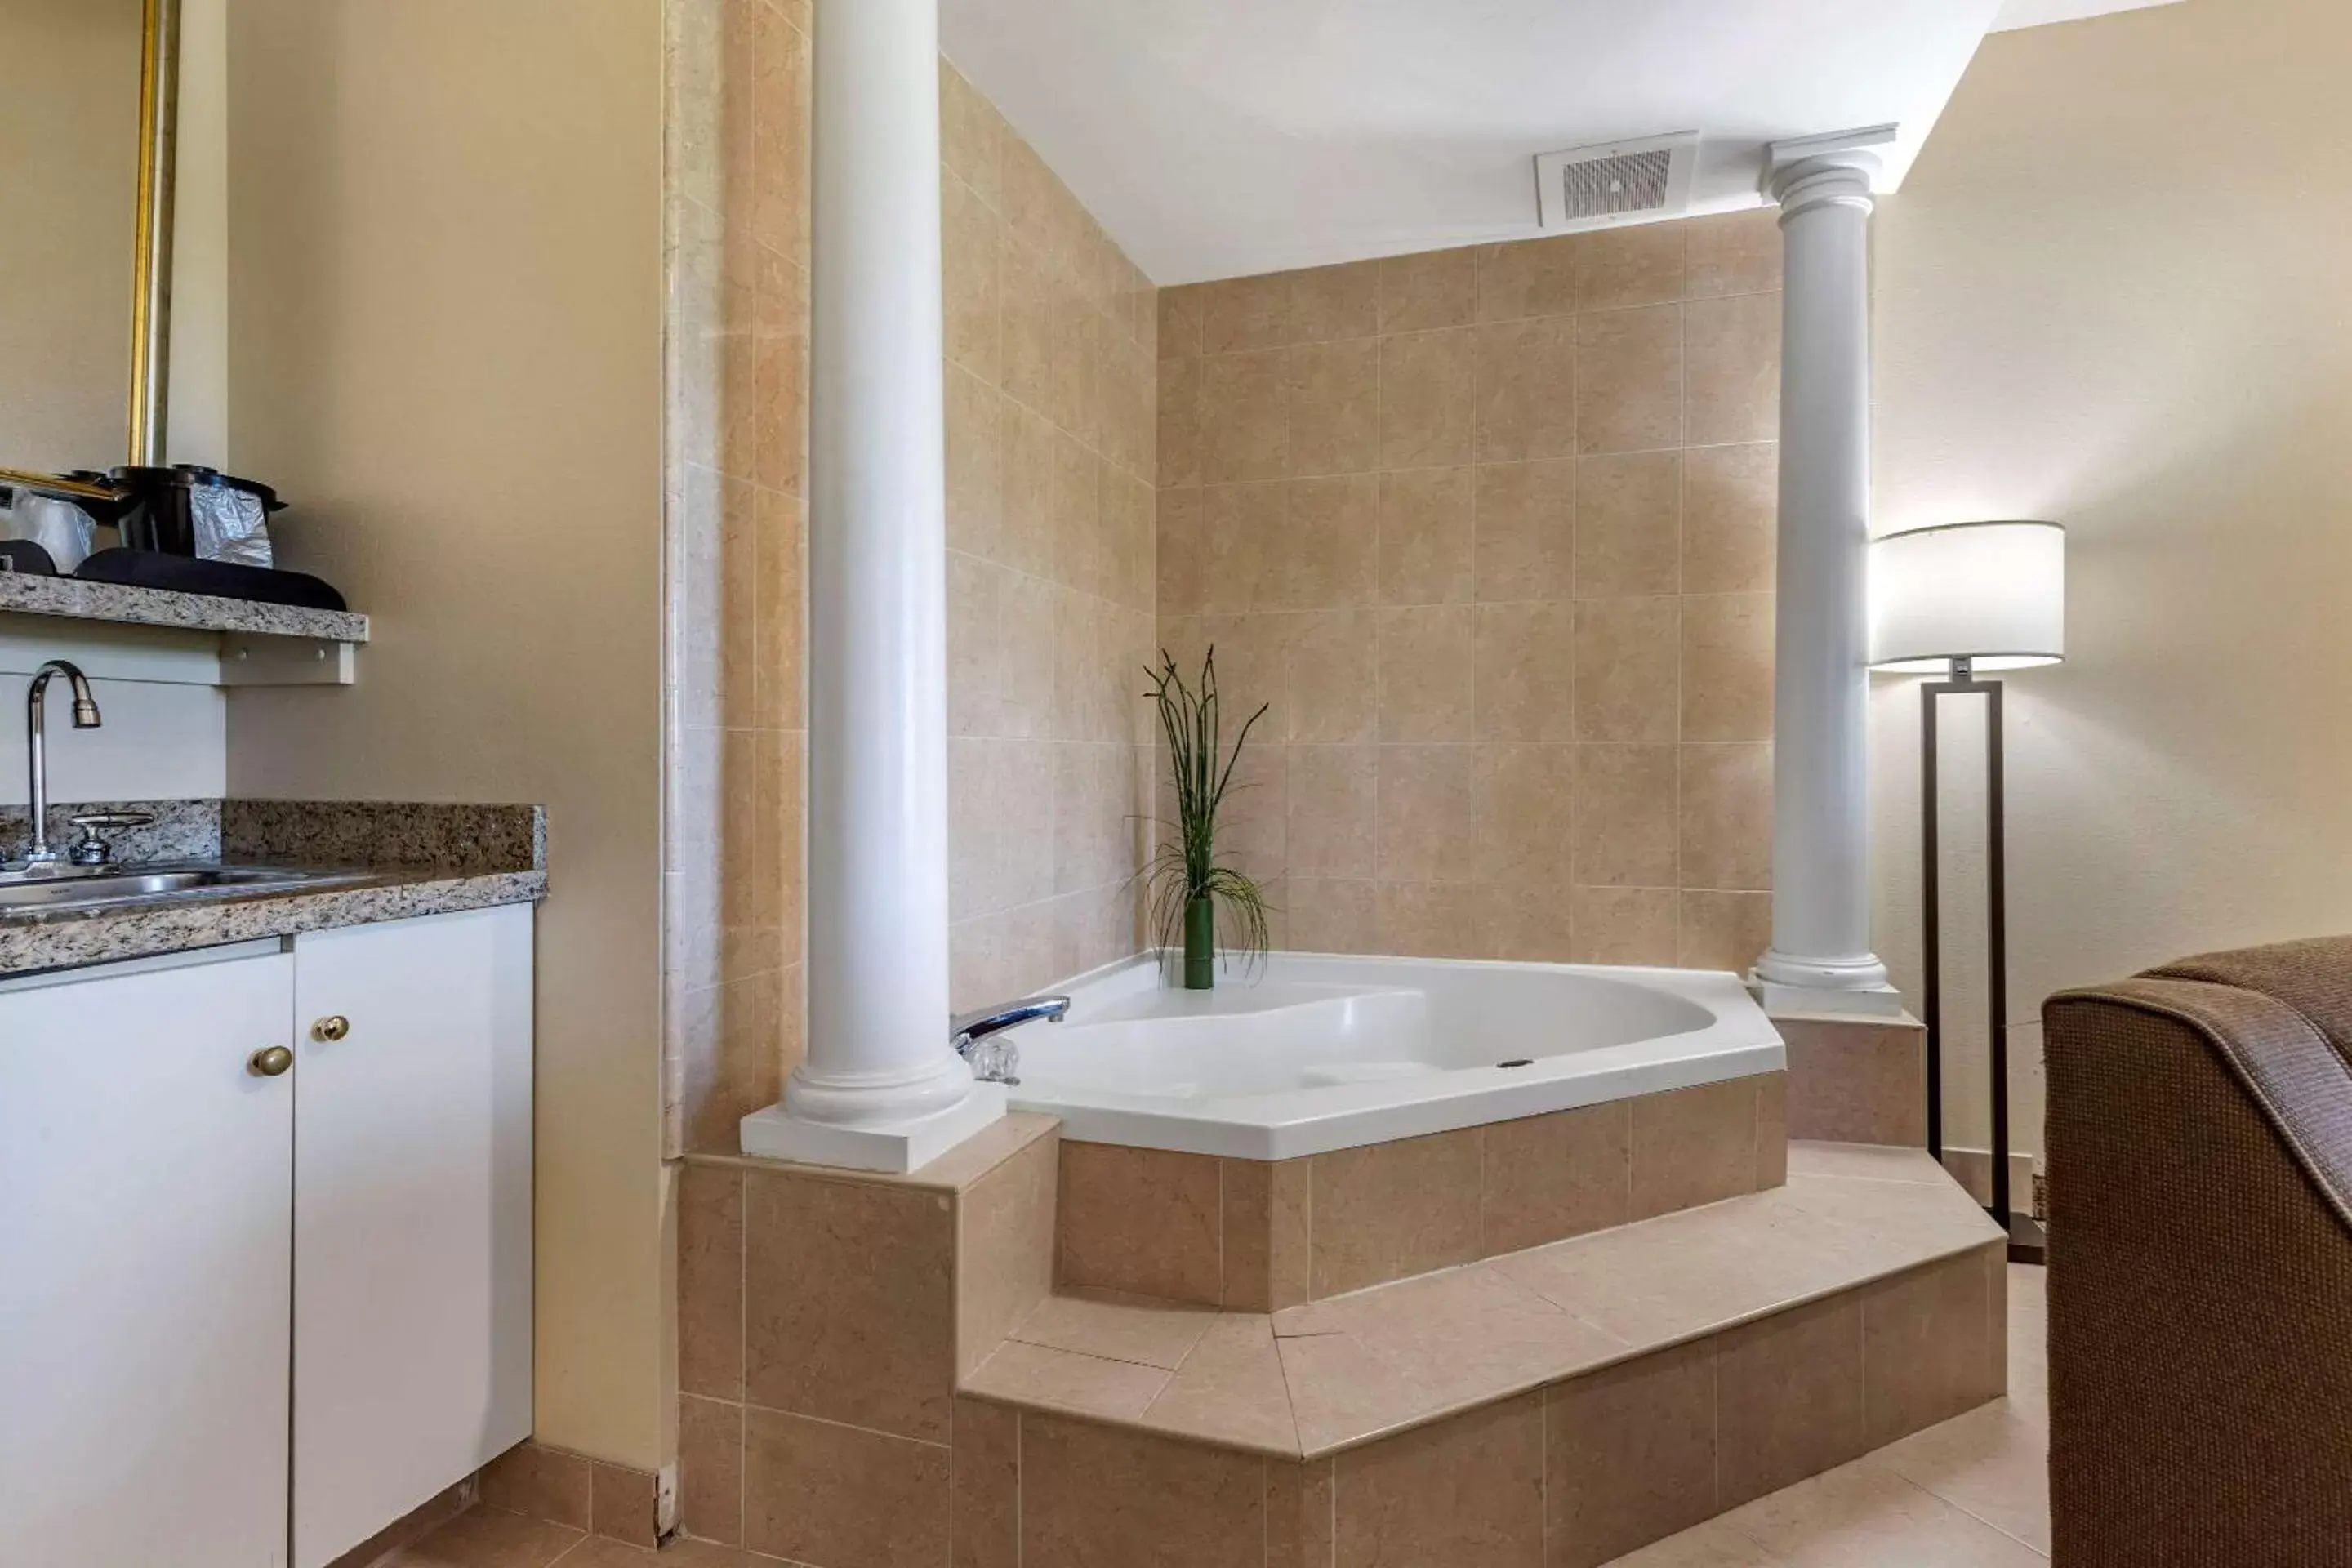 Bedroom, Bathroom in Comfort Suites Myrtle Beach Central